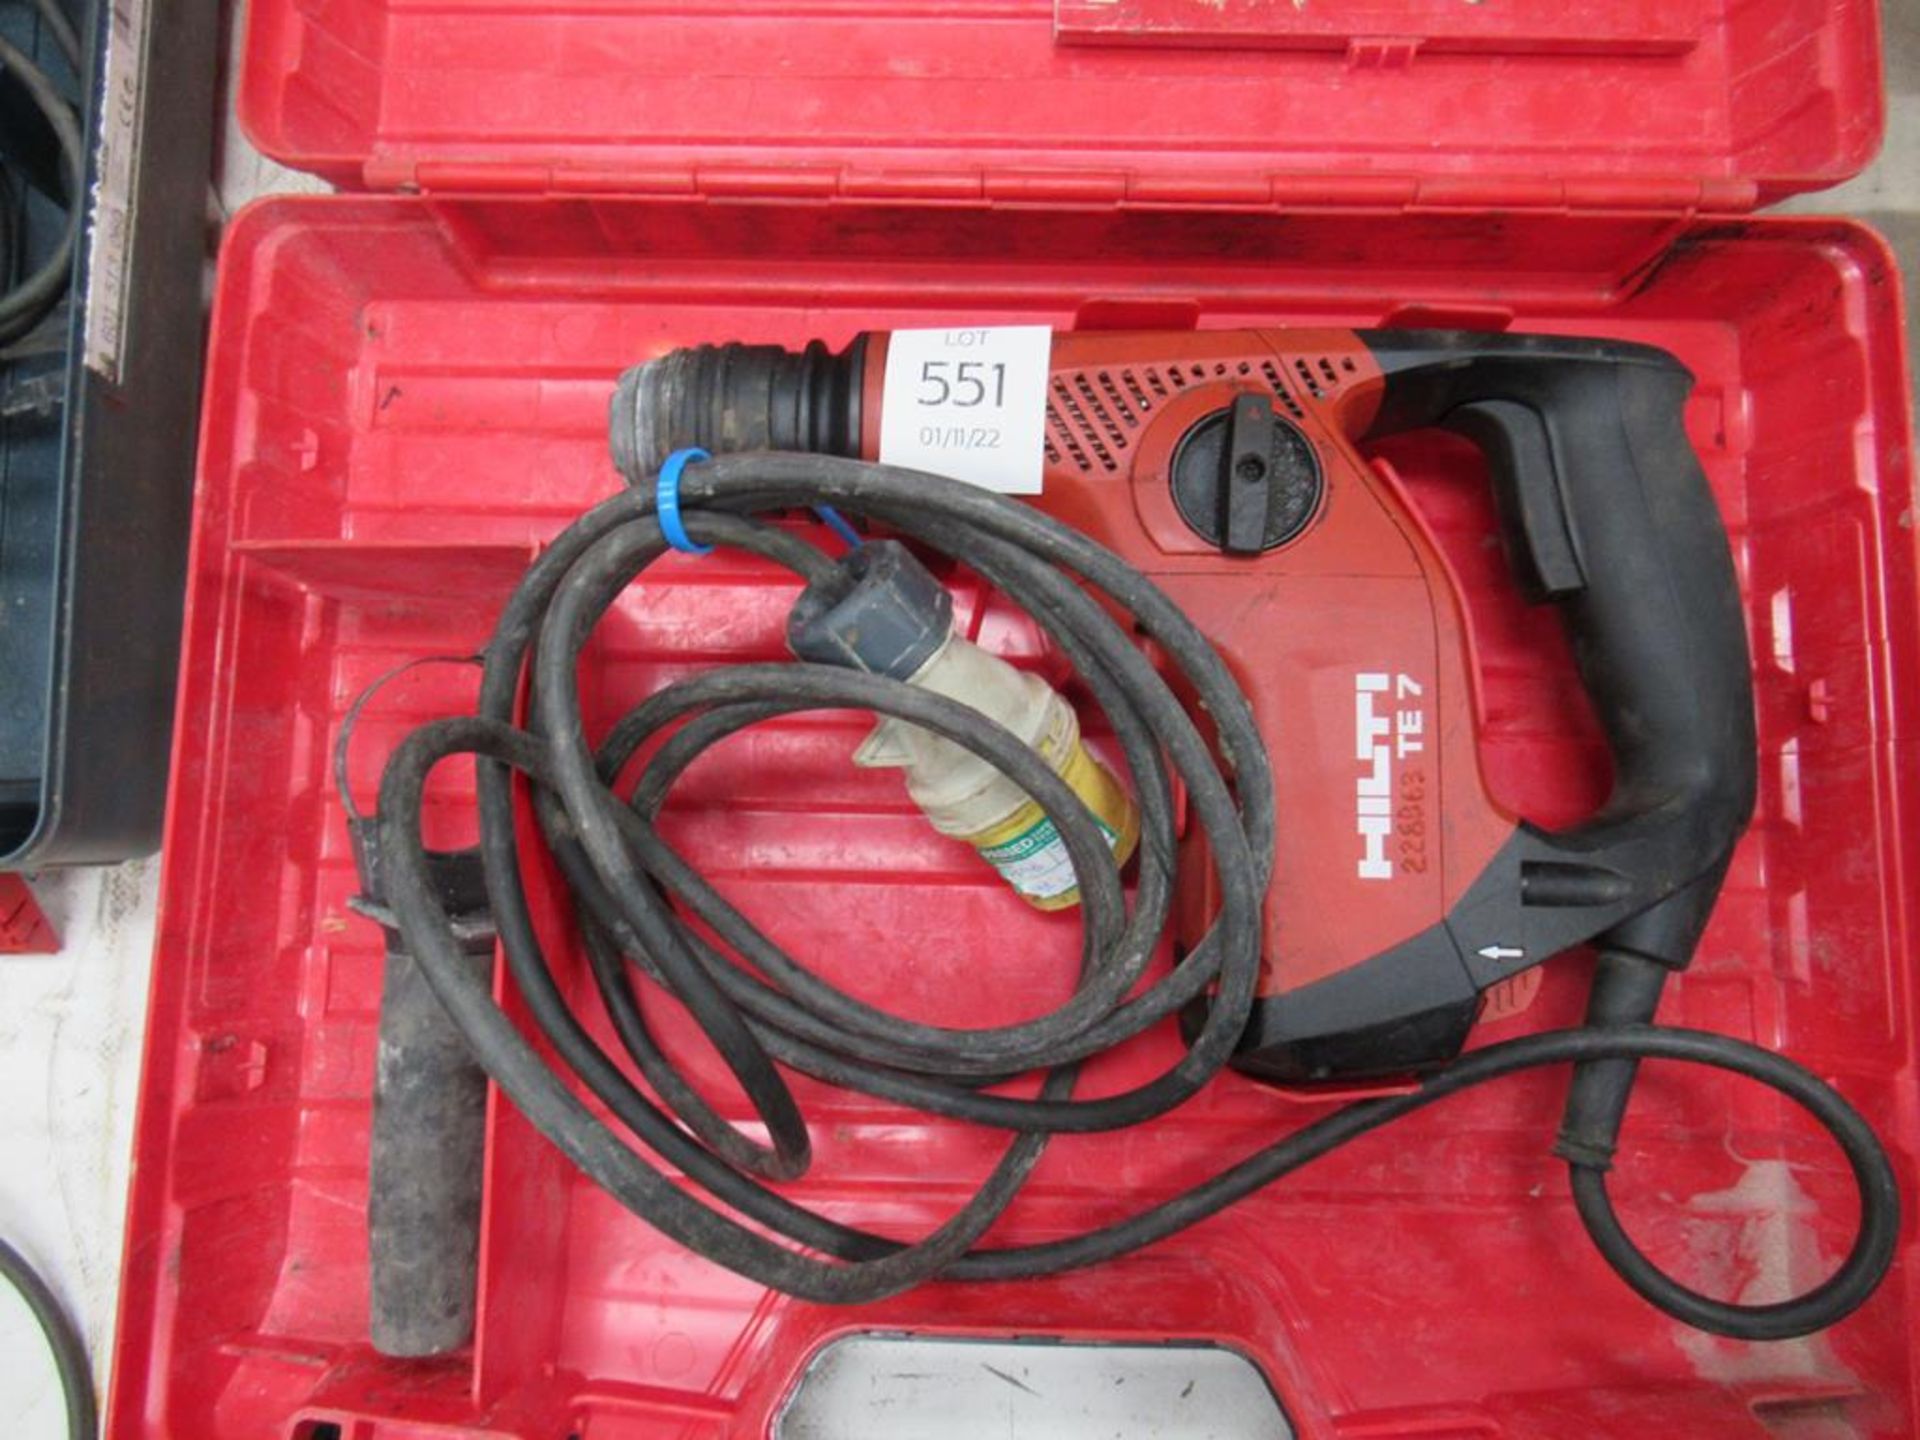 Hilti TE7 110V Hammer Drill in carry case